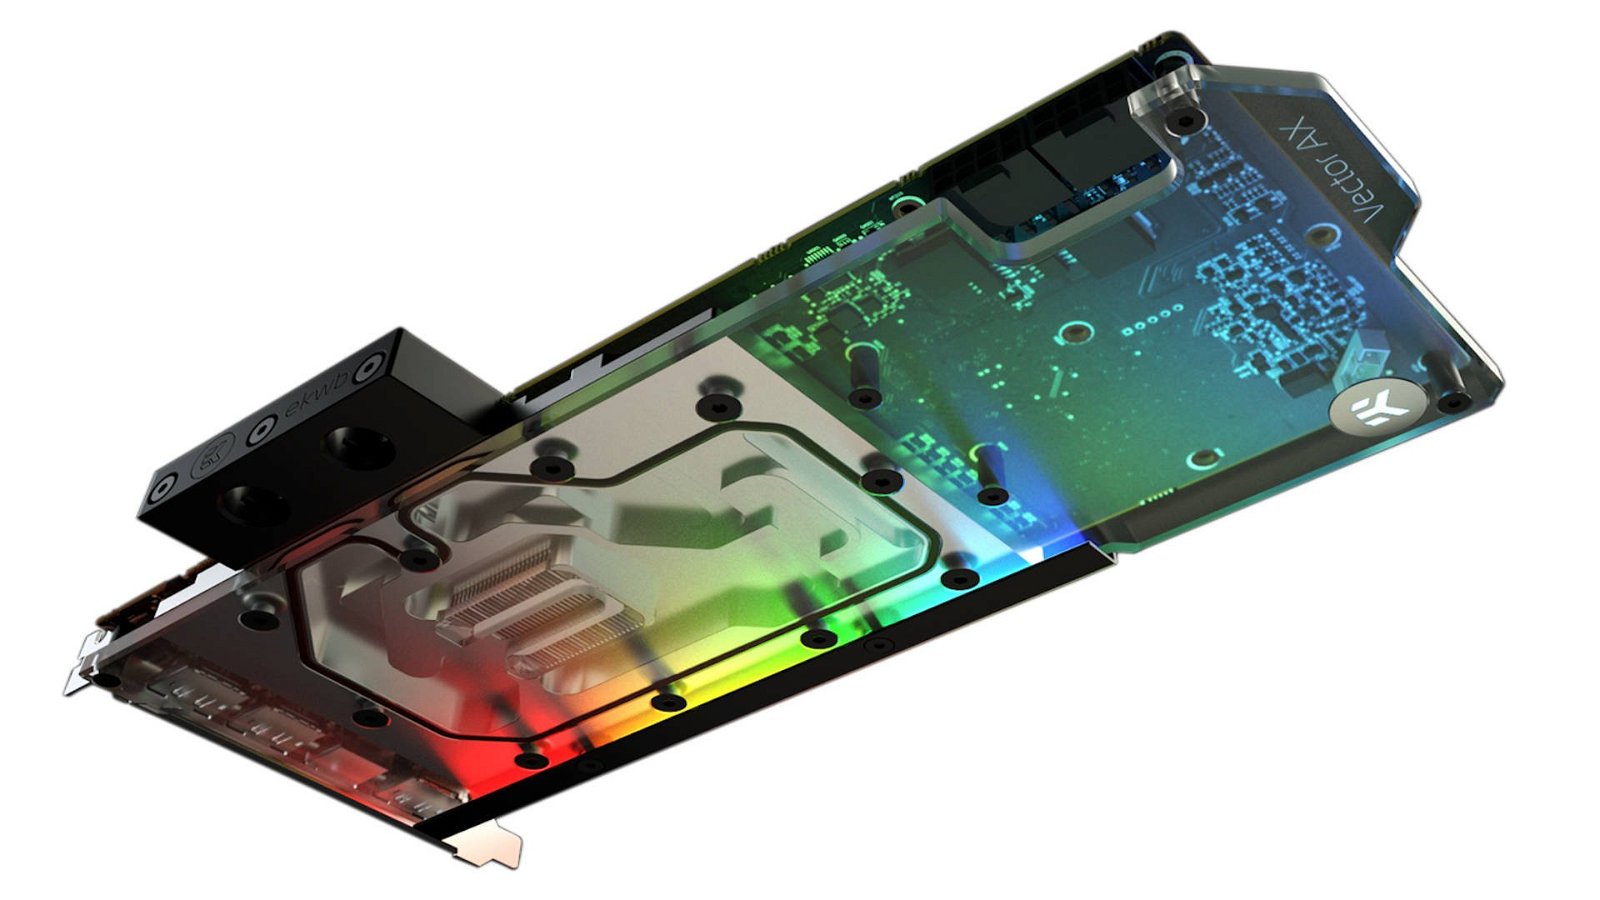 Immagine di EK, un nuovo waterblock con illuminazione RGB per le Radeon RX 5700